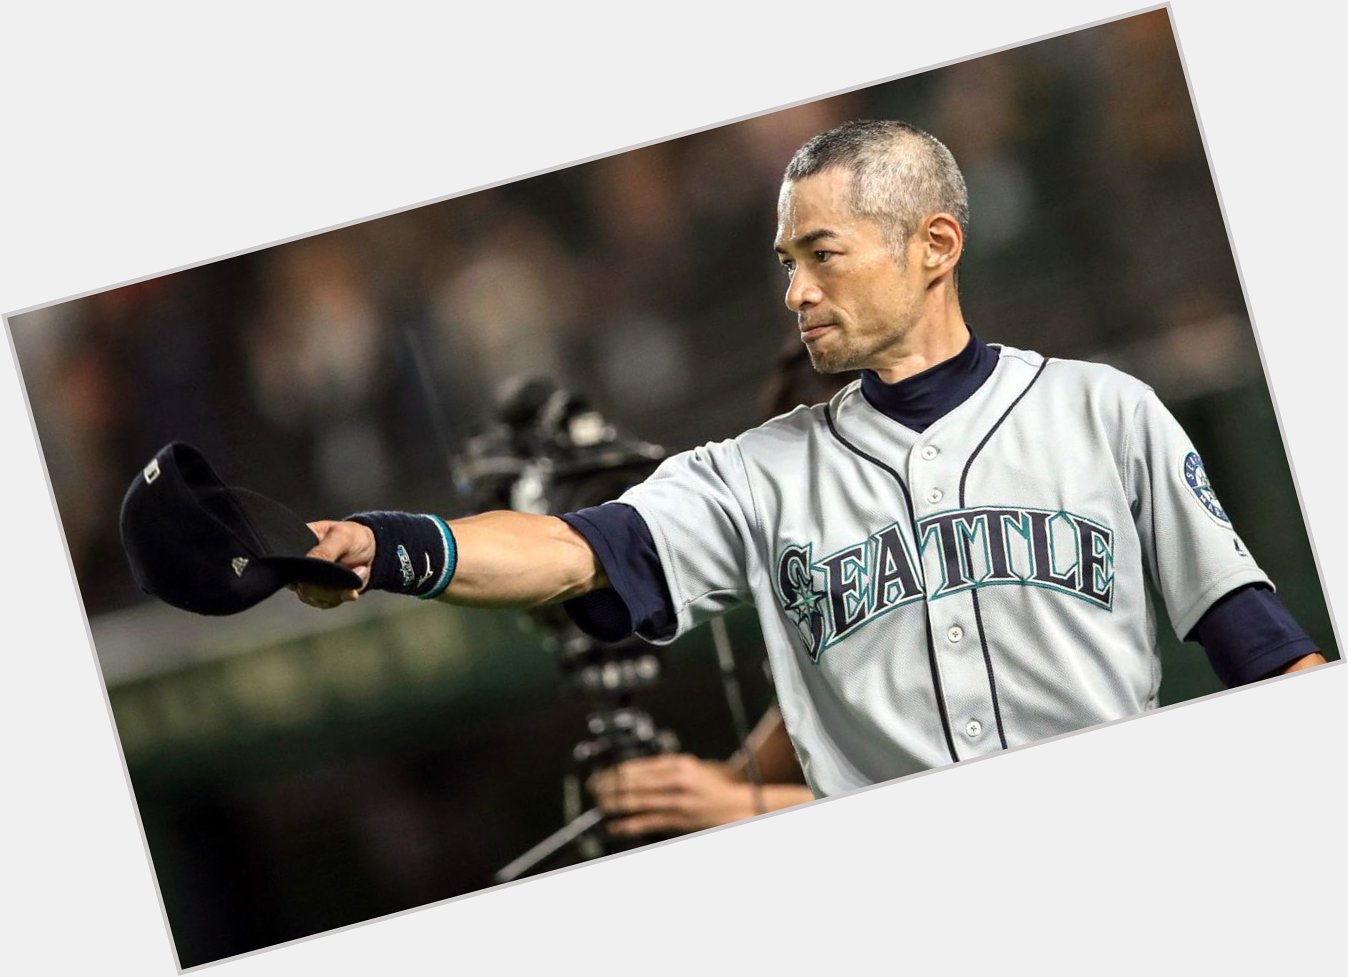 Happy Birthday to a Seattle Mariners legend! Ichiro Suzuki turns 49 today 